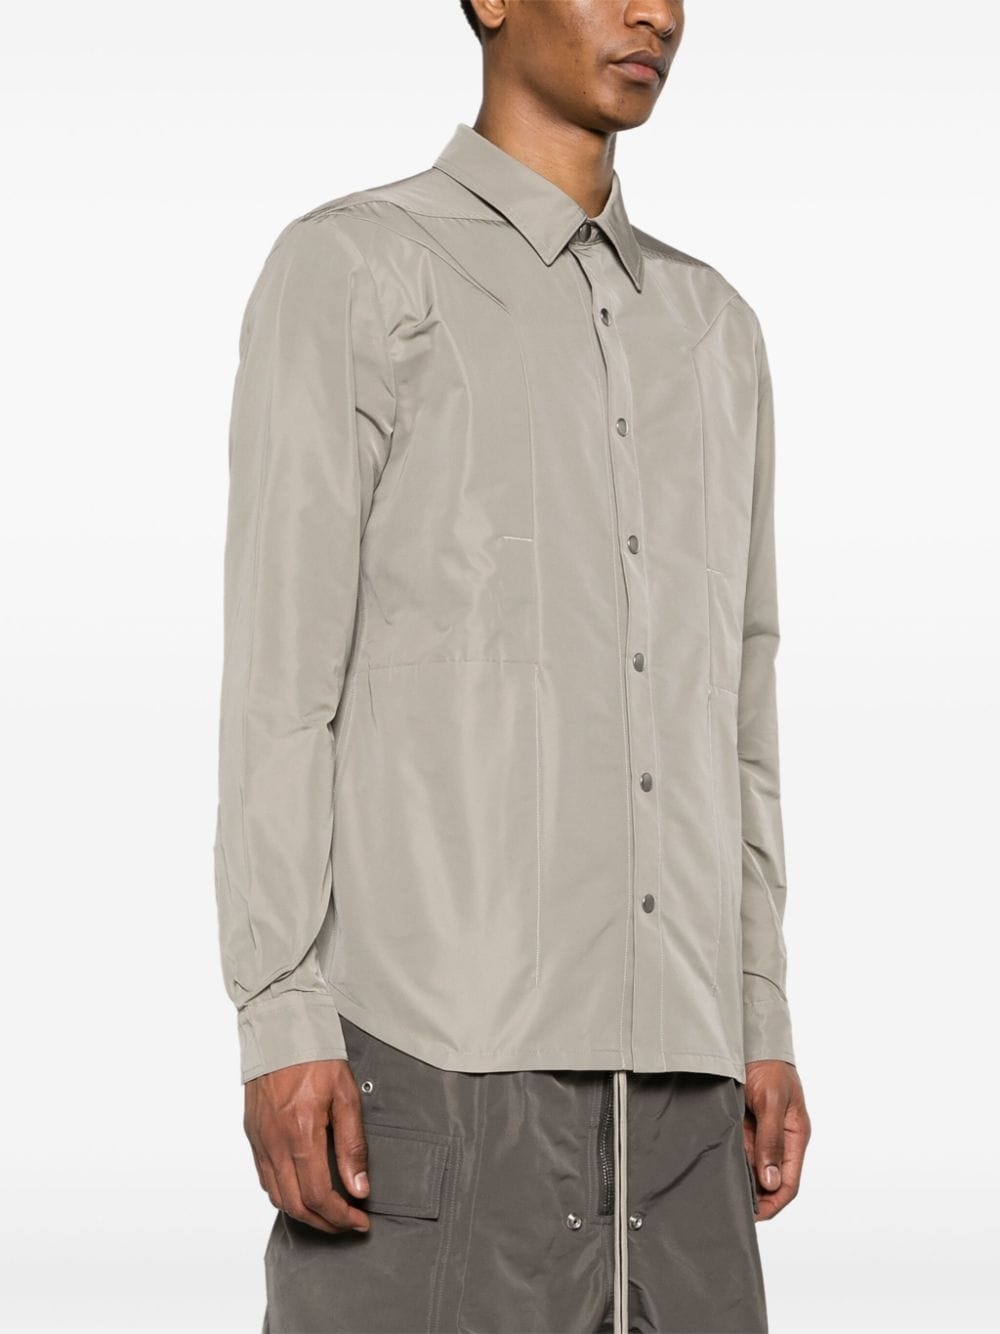 Fogpocket shirt jacket - 3